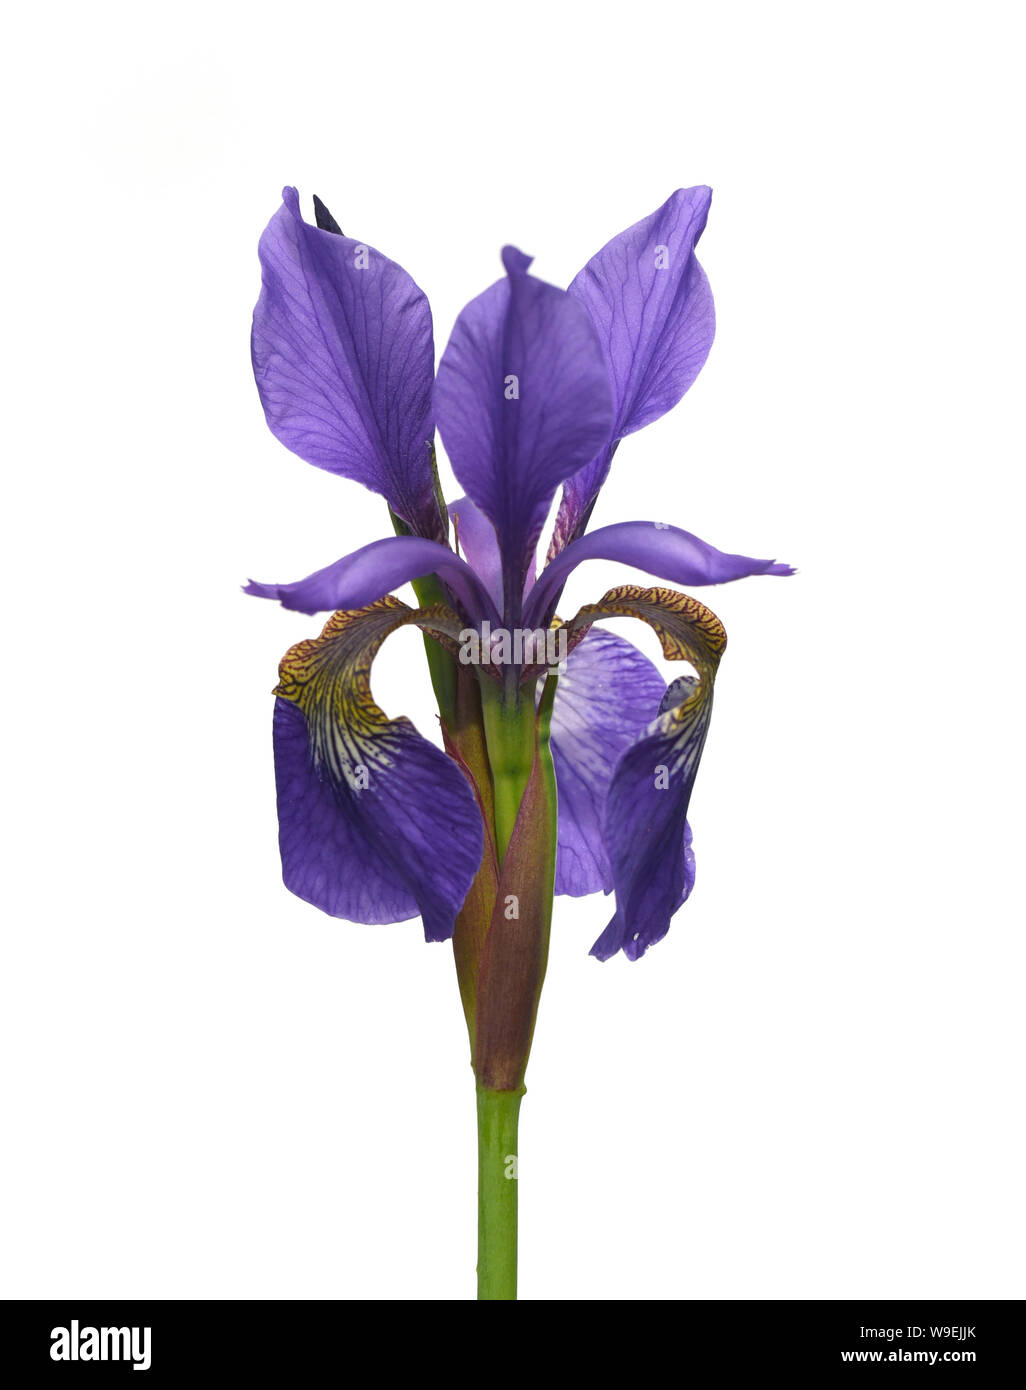 Sibirische Iris, Iris sibirica,  ist eine Heilpflanze und eine Wasser-und Sumpfpflanze mit blauen Blueten. Sie kommt auch oft wild vor. The Siberian I Stock Photo